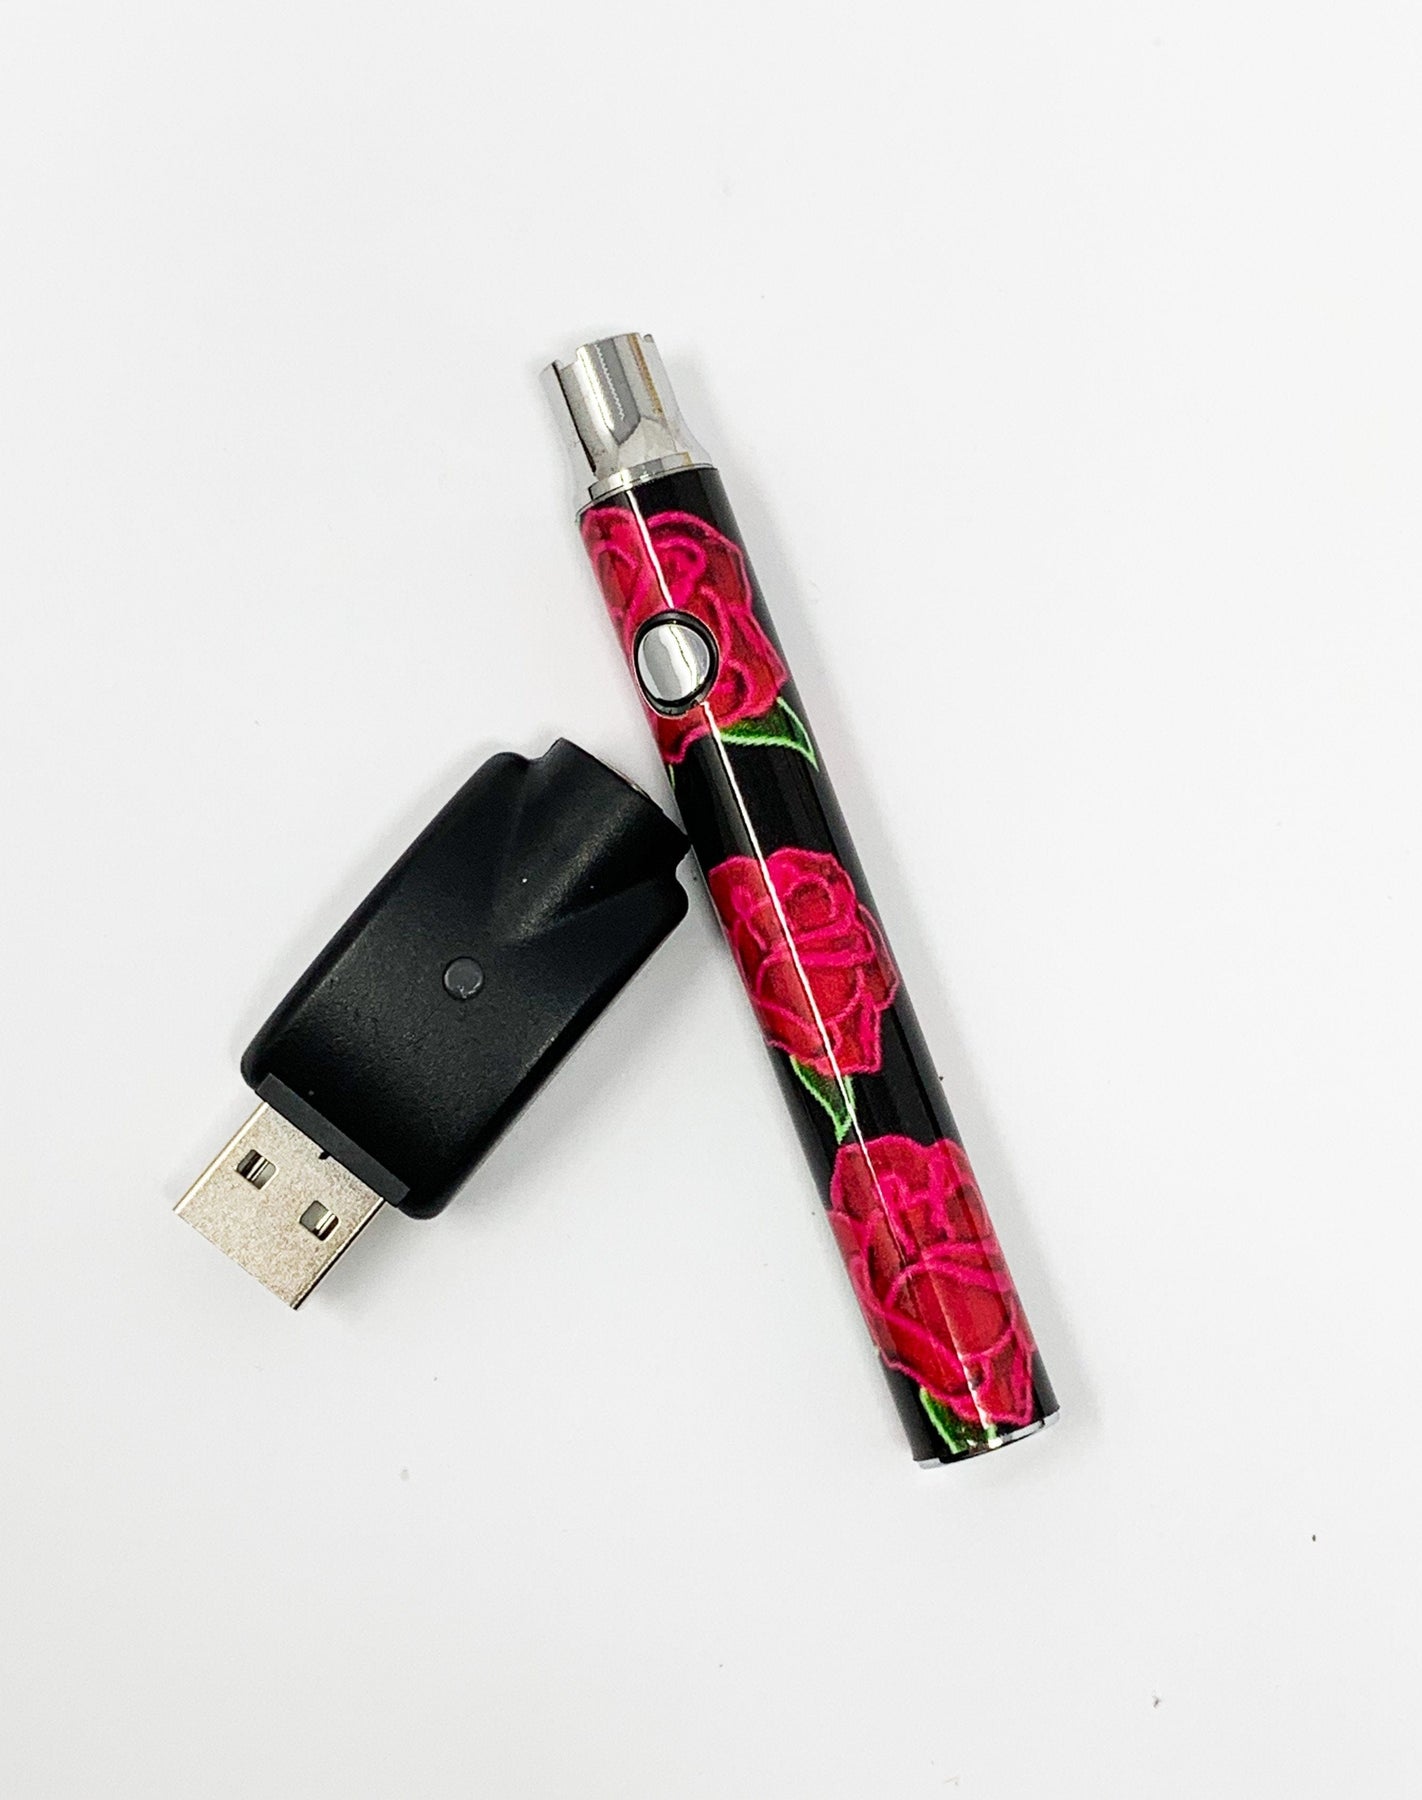 510 Threaded Battery Rose Gold Starter Kit Dab Pen For Sale